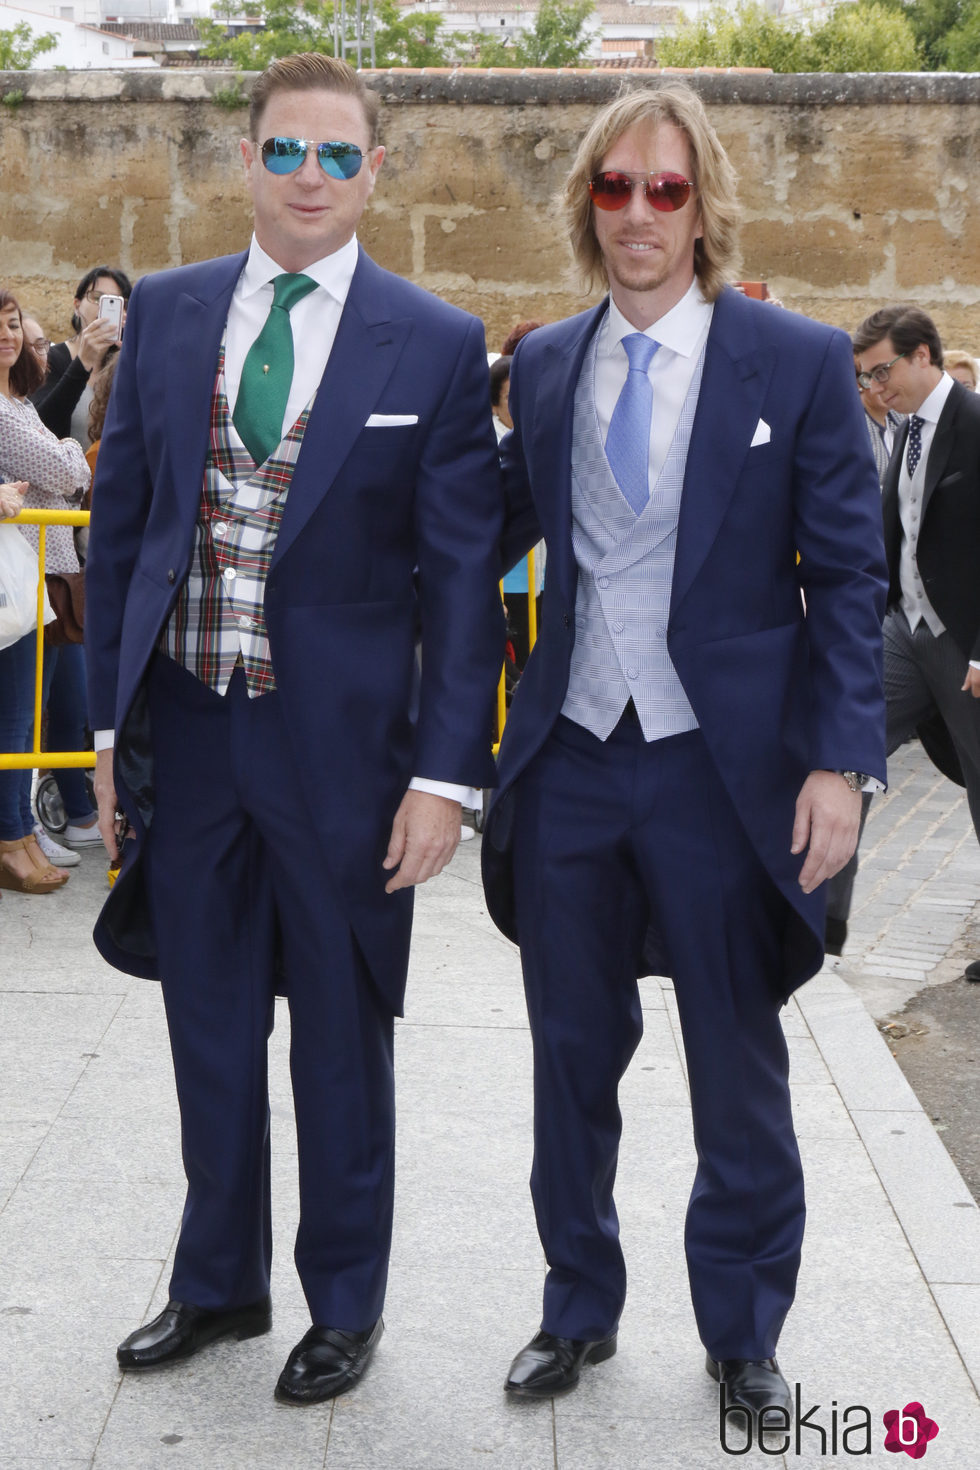 Jorge Cadaval y Ken Appledorn durante la boda de Marta Cadaval en Sevilla